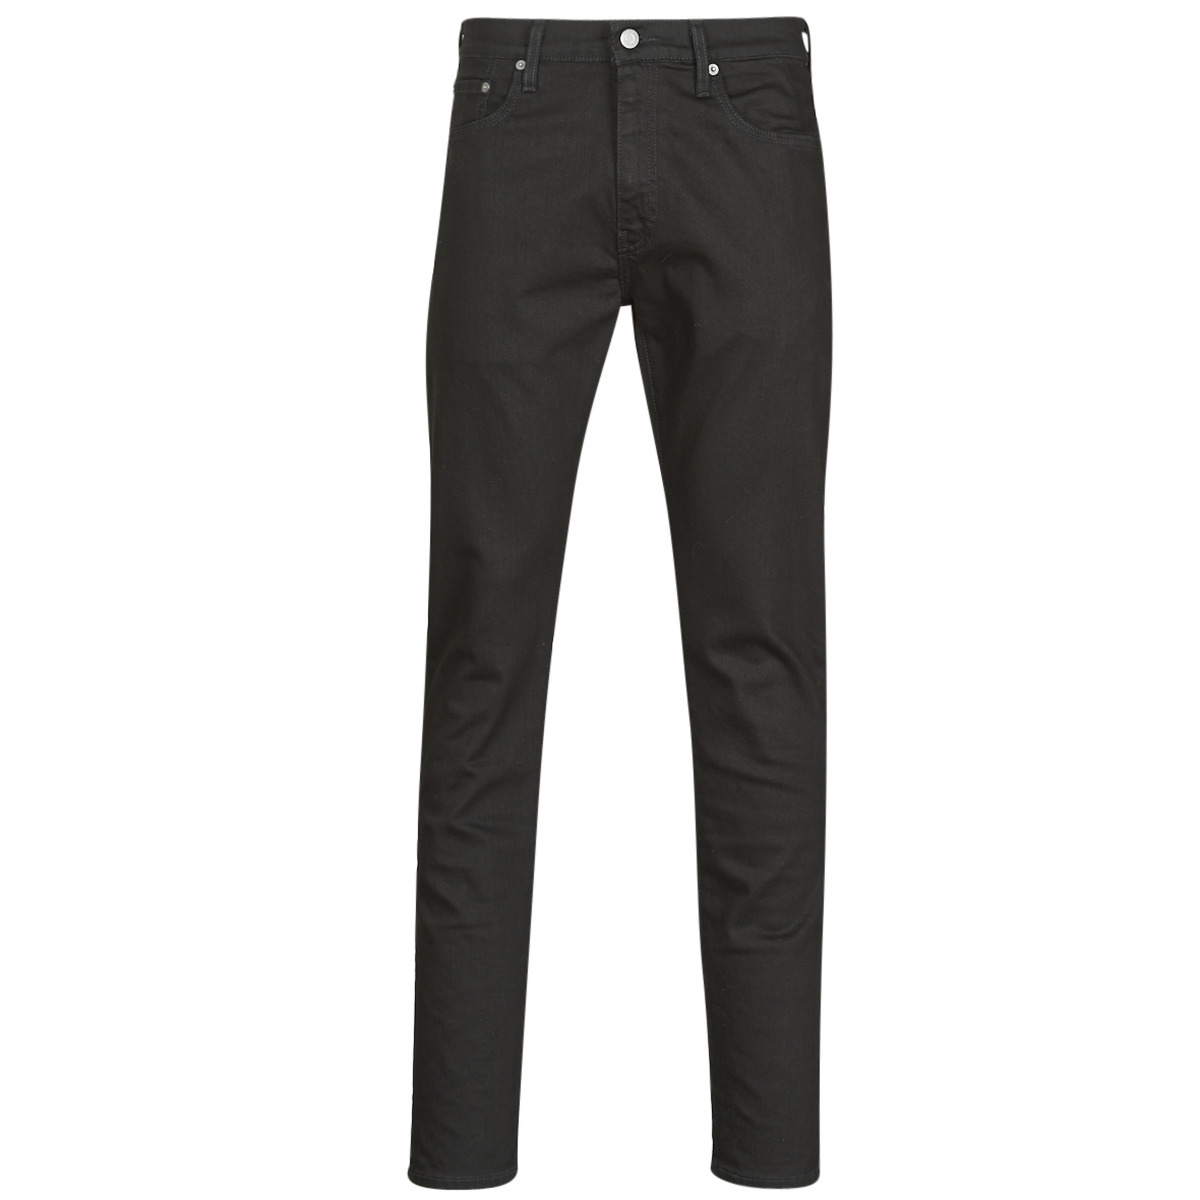 Spartoo - Skinny Jeans in Black Levi's GOOFASH